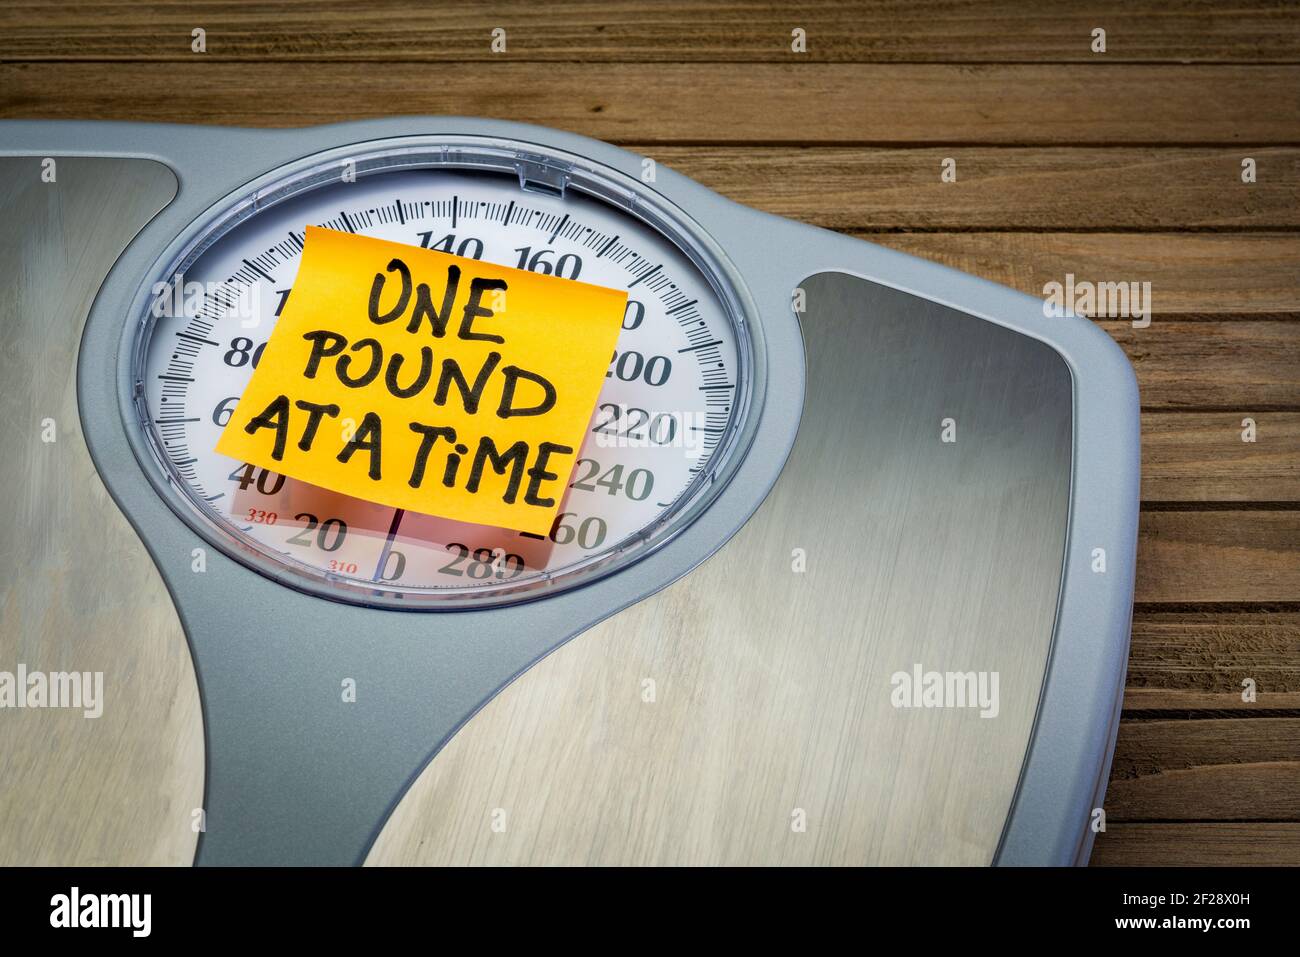 Ein Pfund zu einer Zeit - Motivations-Erinnerung auf einem Bad Waage Gewichtsverlust Konzept Stockfoto